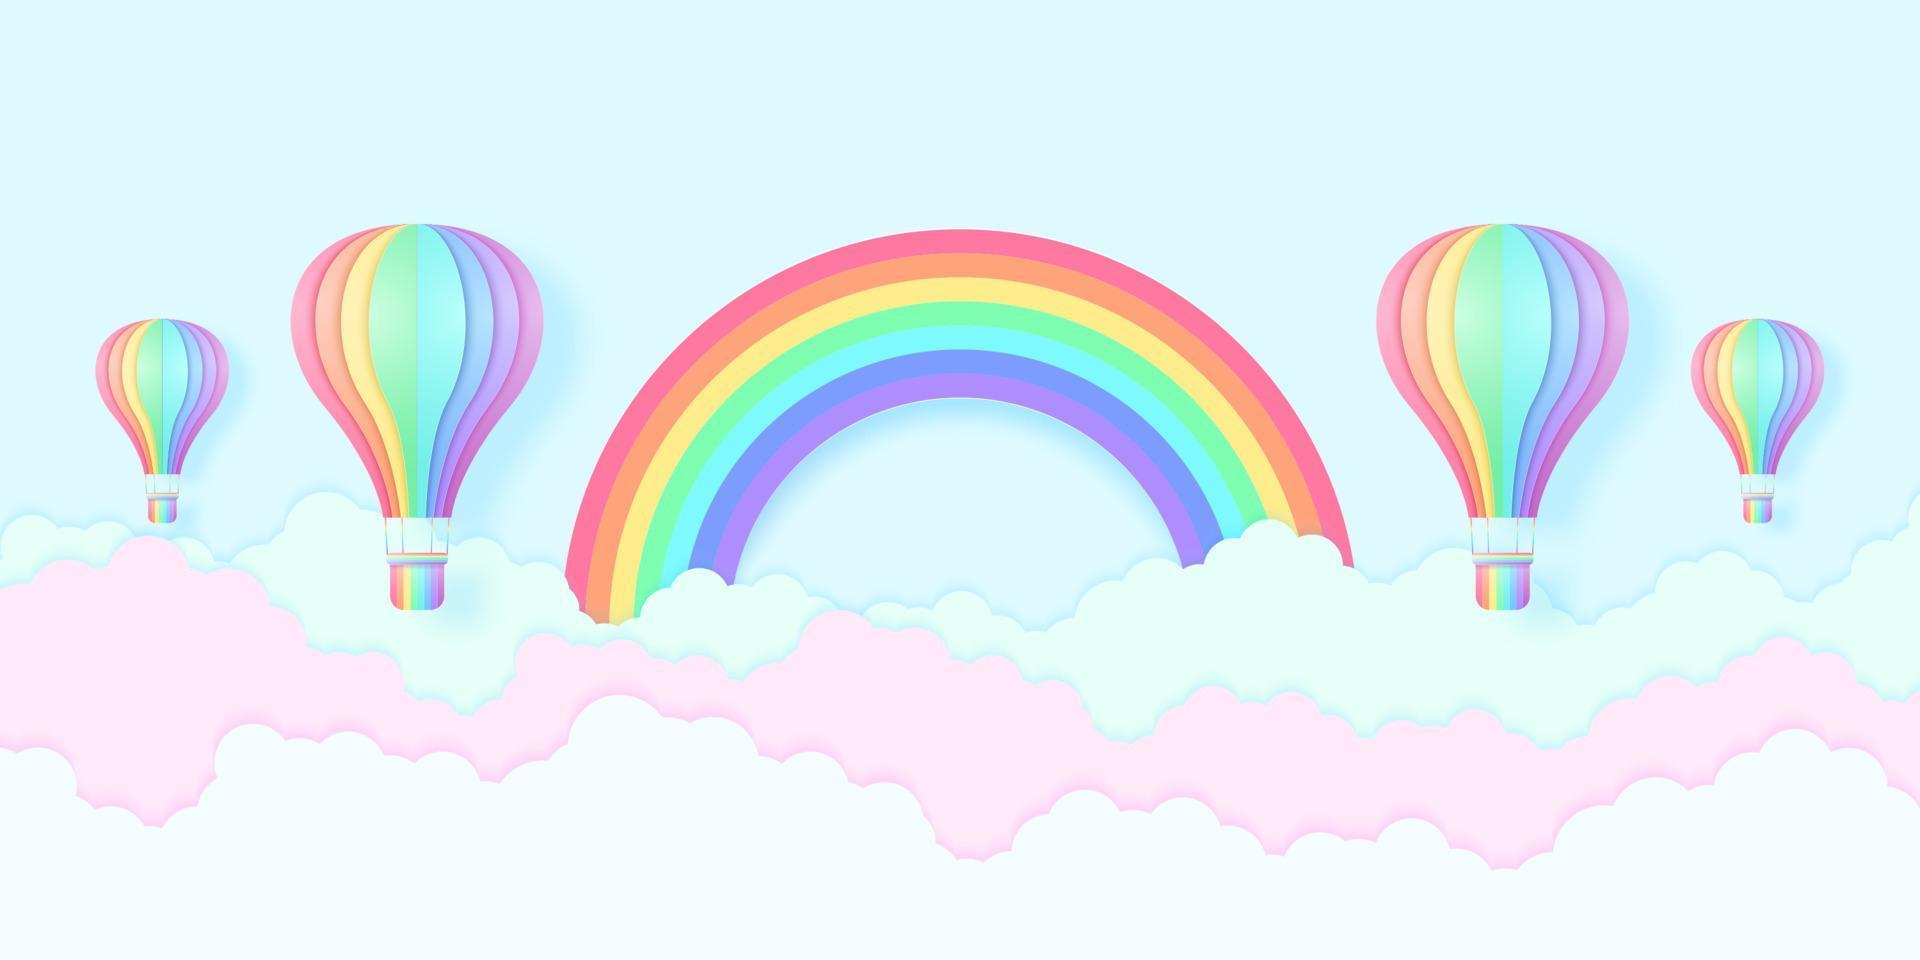 mongolfiere color arcobaleno che volano nel cielo blu e nuvole colorate con arcobaleno, stile cartaceo vettore